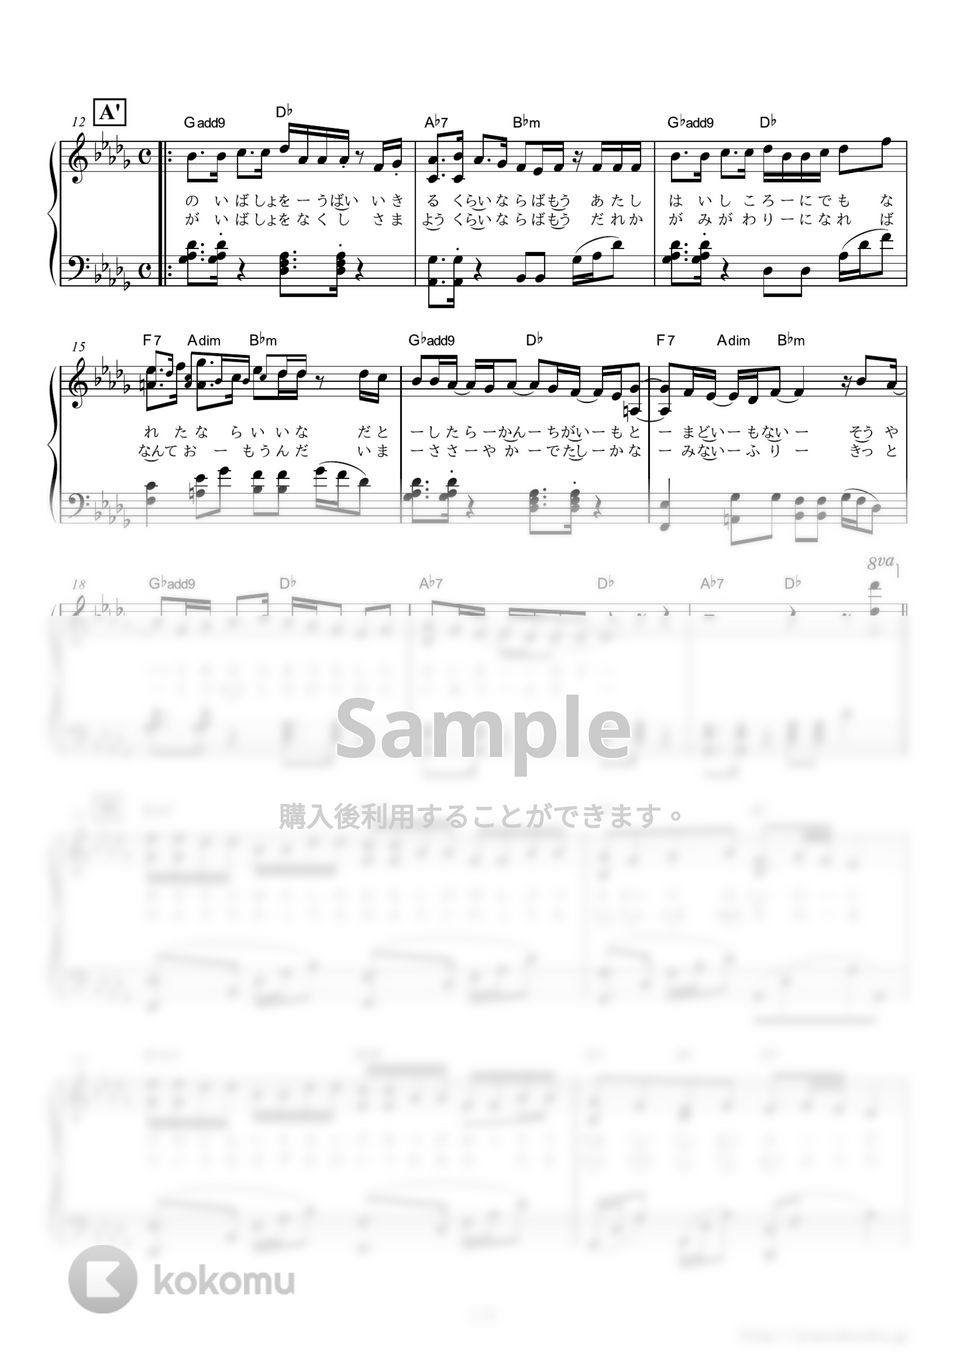 米津玄師 - アイネクライネ (「東京メトロ」CMソング) by ピアノの本棚